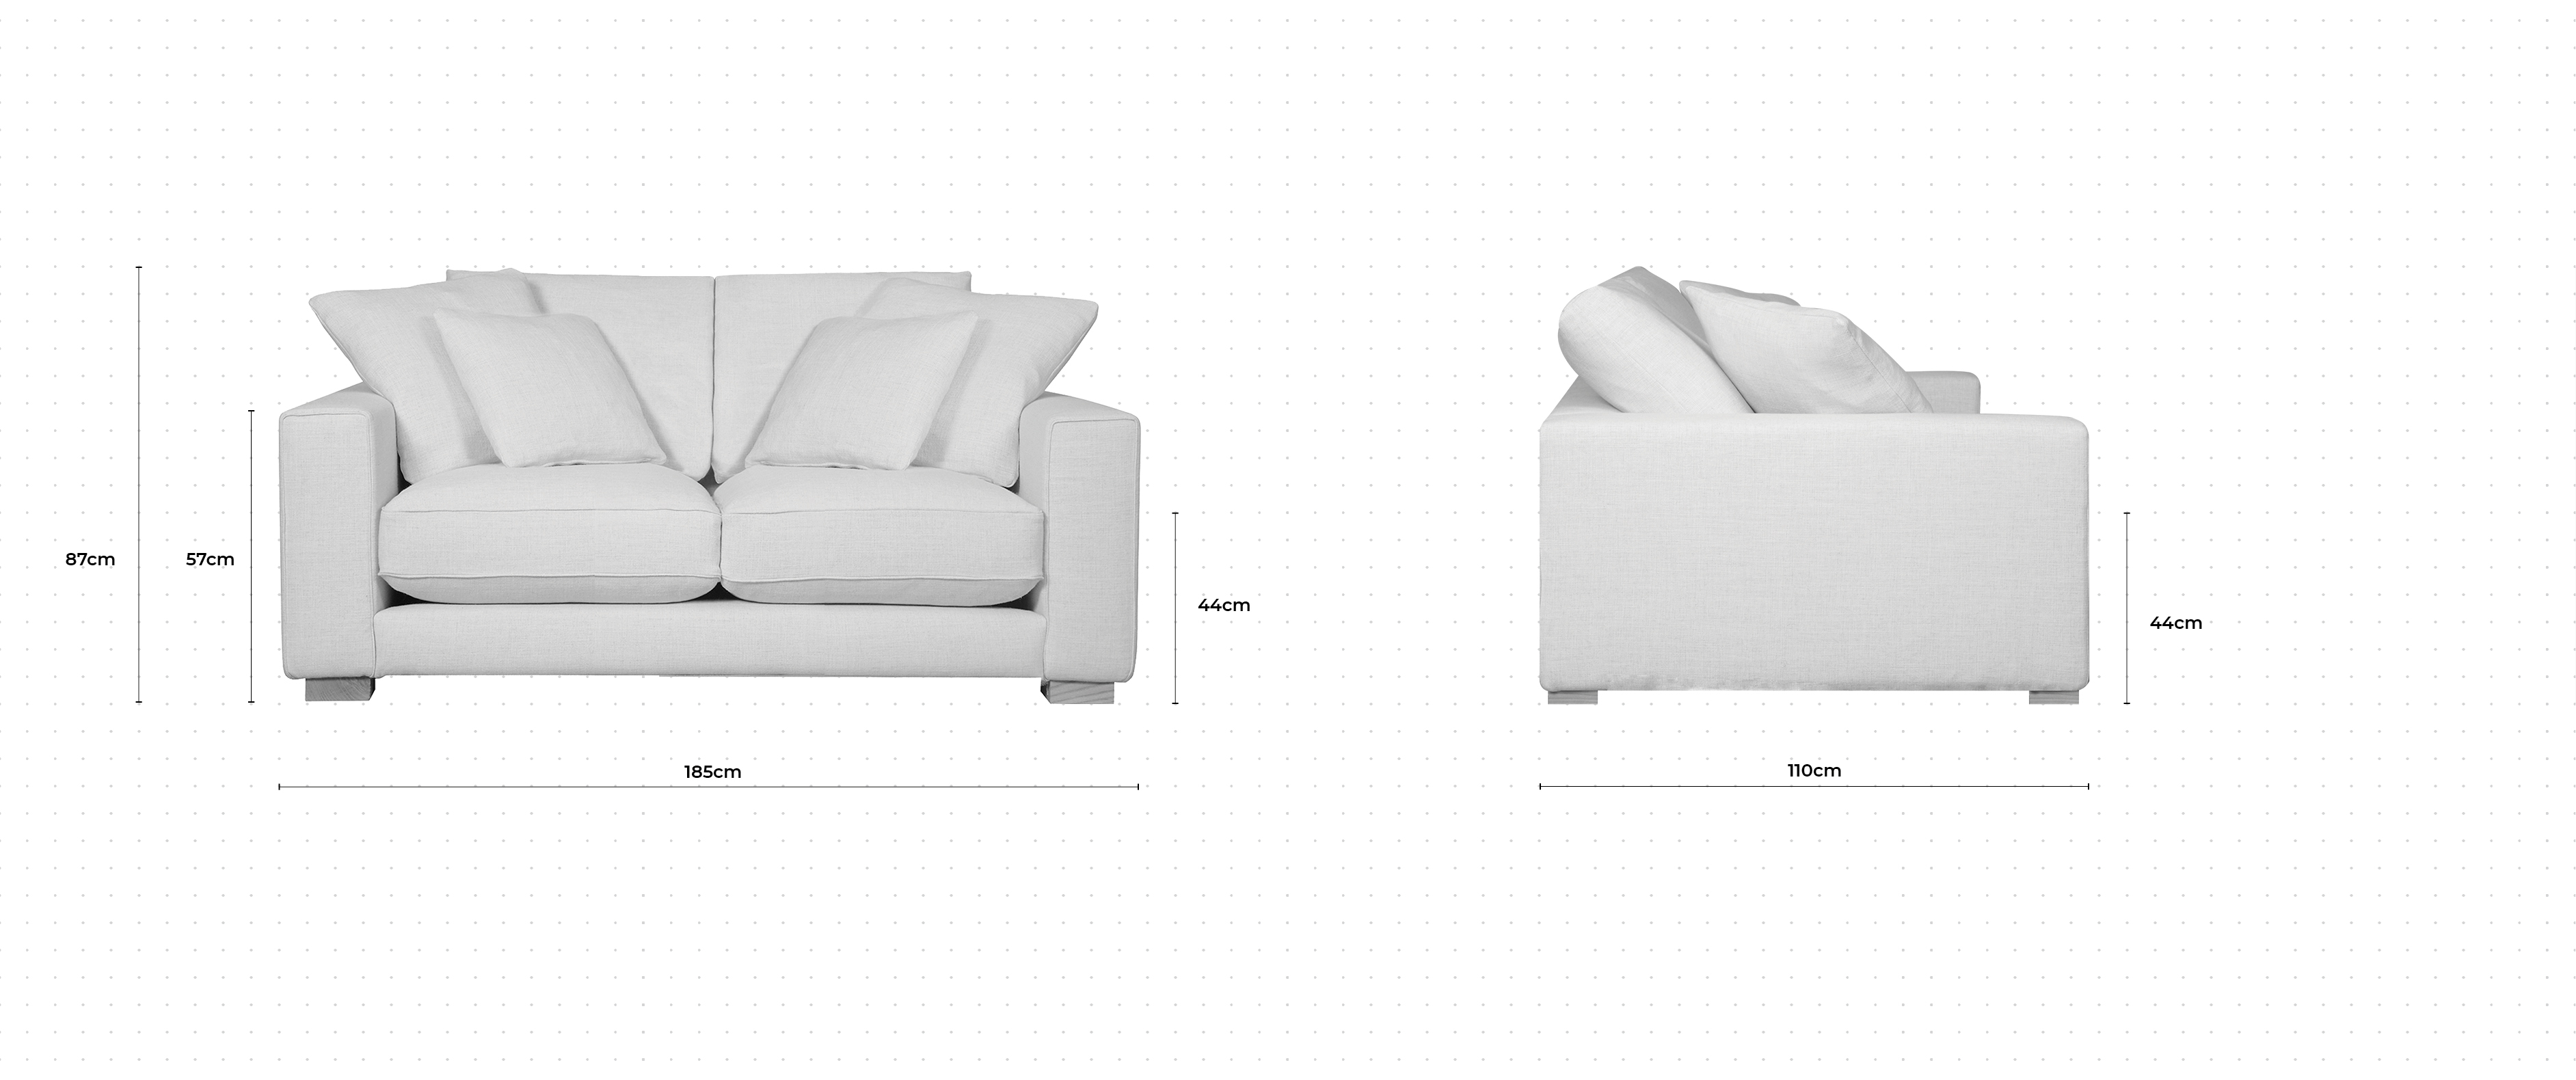 Dillon 2 Seater Sofa dimensions